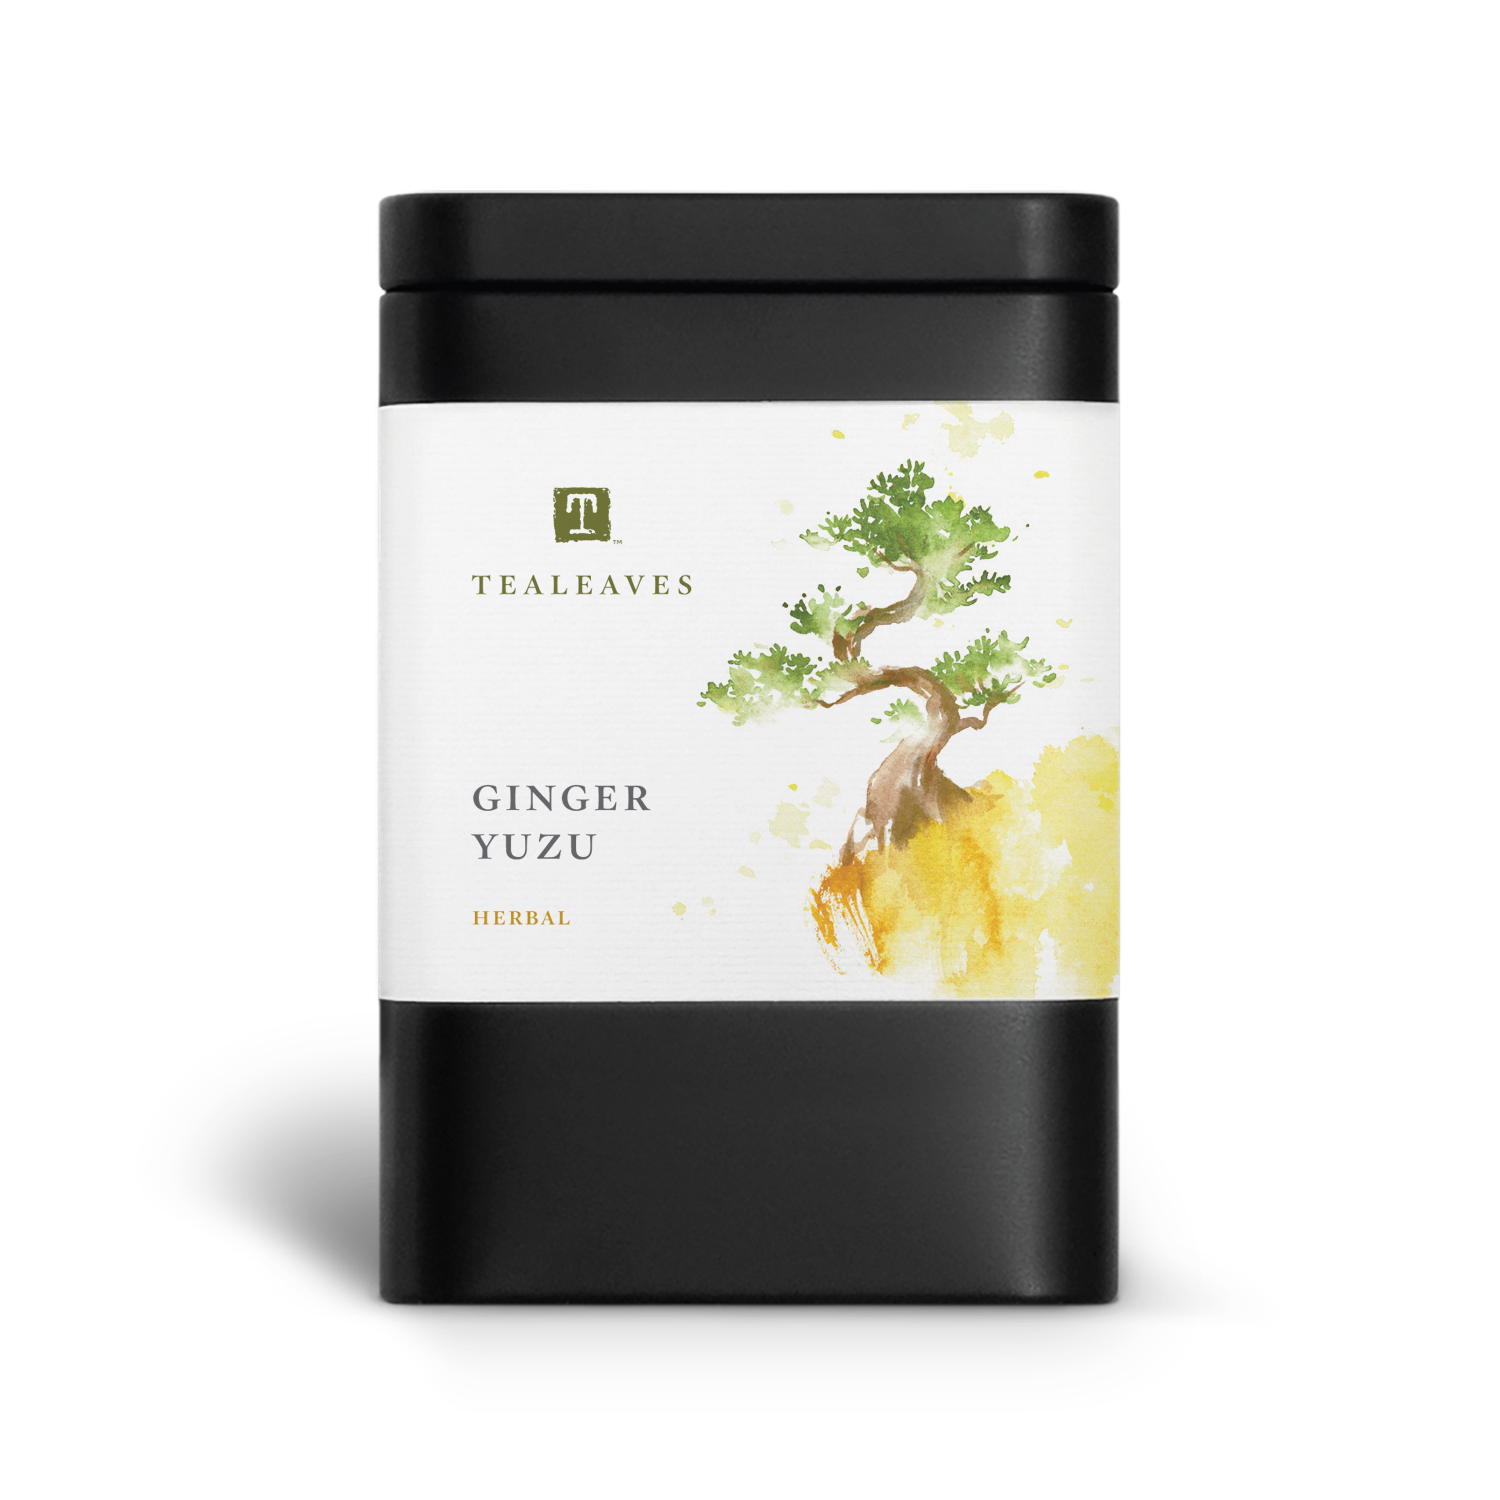 Ginger Yuzu loose leaf herbal tea in eco friendly tea packaging